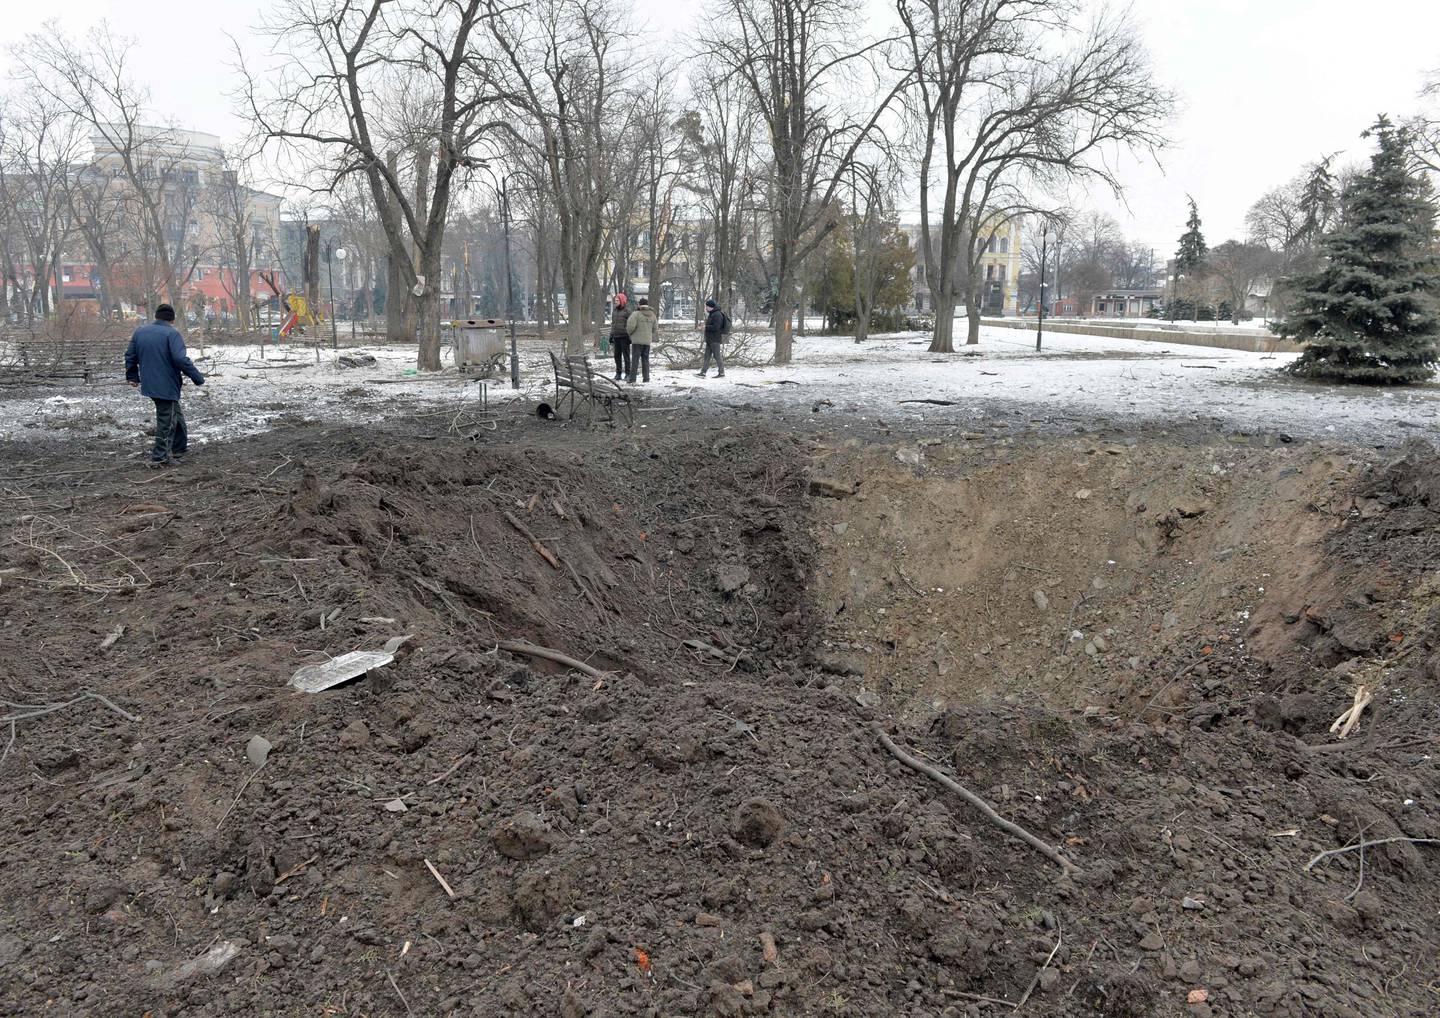 Bombene har falt tett over Ukraina i over en måned nå. Det har ført til enorme menneskelige lidelser, og også naturen er blitt hardt rammet på ulike vis, ifølge ukrainerne.